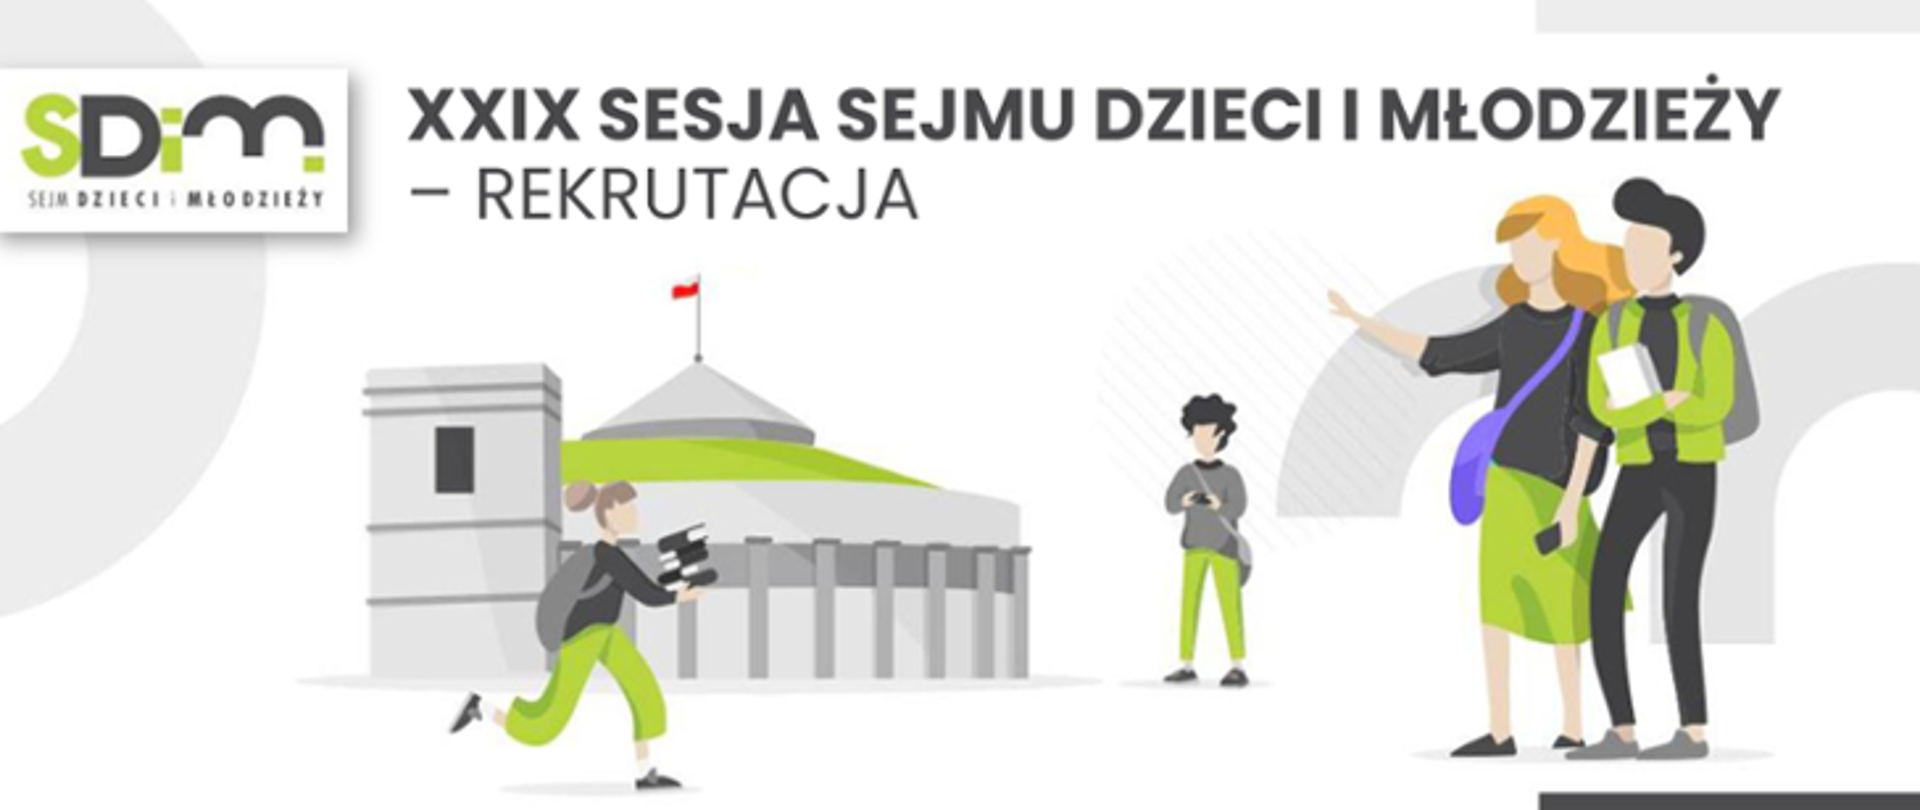 XXIX Sesja Sejmu Dzieci i Młodzieży - REKRUTACJA